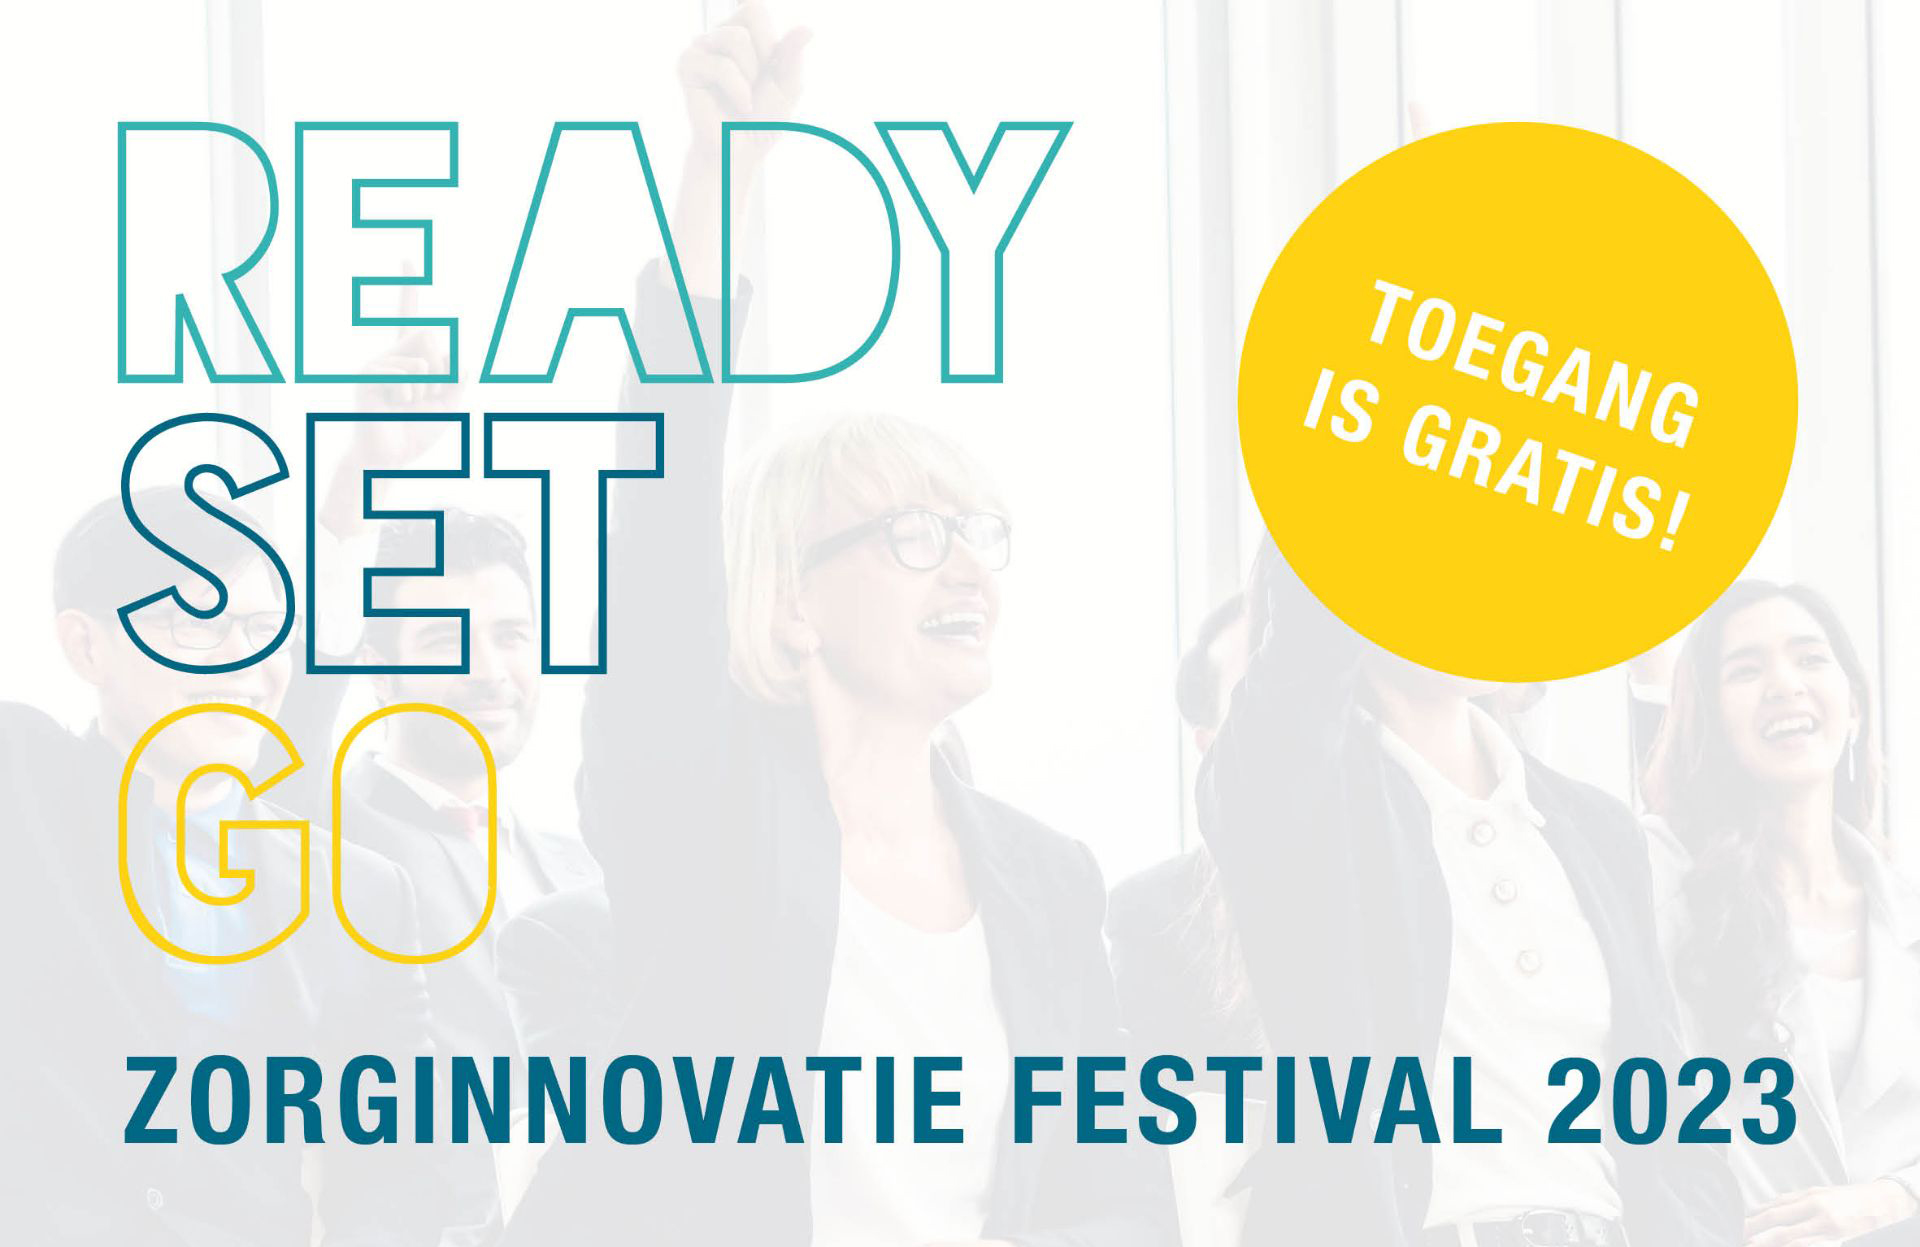 Tekst ‘Ready, Set, Go Zorginnovatie festival 2023’ en in een gele cirkel de tekst ‘toegang is gratis’